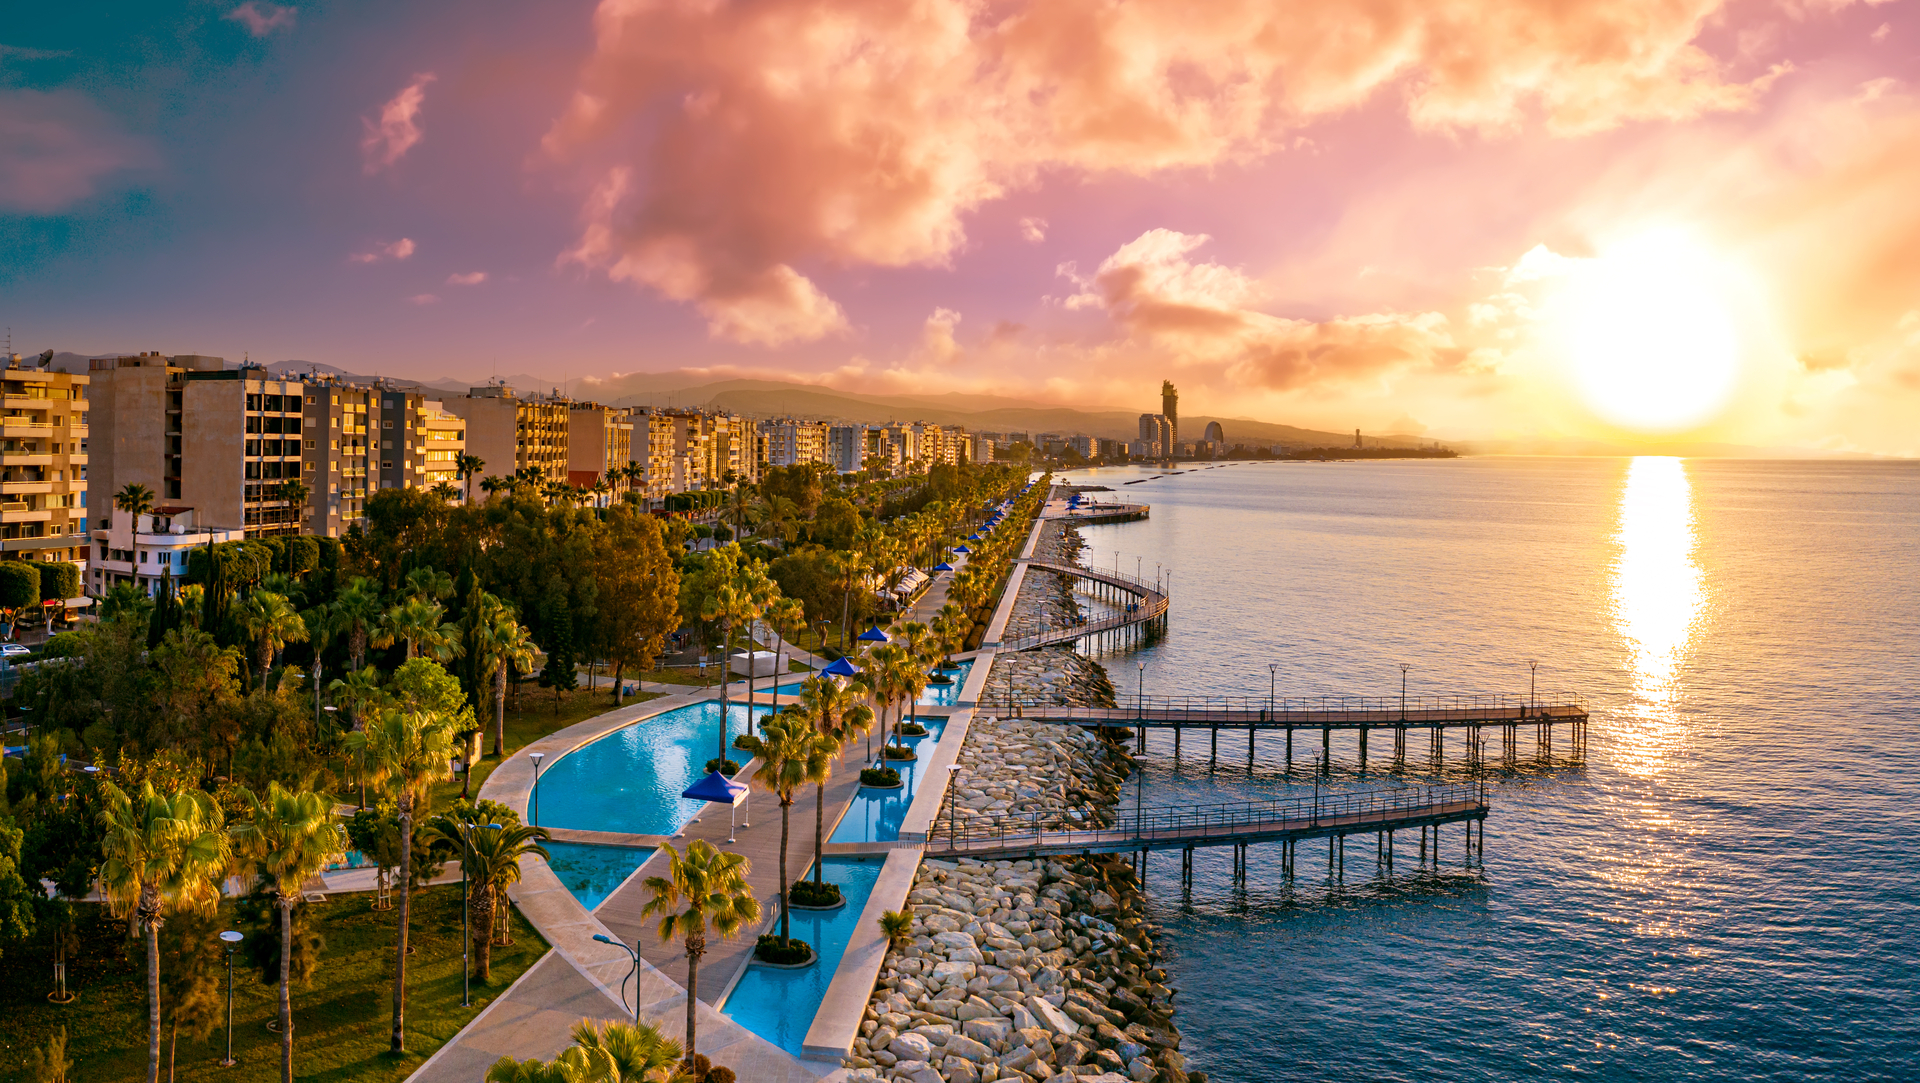 Na tym obrazku przedstawiono piękny krajobraz Cypru, z piaszczystą plażą i luksusowymi hotelami, które wyrastają zielonymi ogrodami. W oddali widoczne są także góry, które dodają tej scenerii jeszcze więcej uroku. Plaża jest idealnym miejscem do relaksu i wypoczynku, a hotele oferują wysoki standard usług, aby zapewnić swoim gościom wygodę i komfort podczas ich pobytu na wyspie.